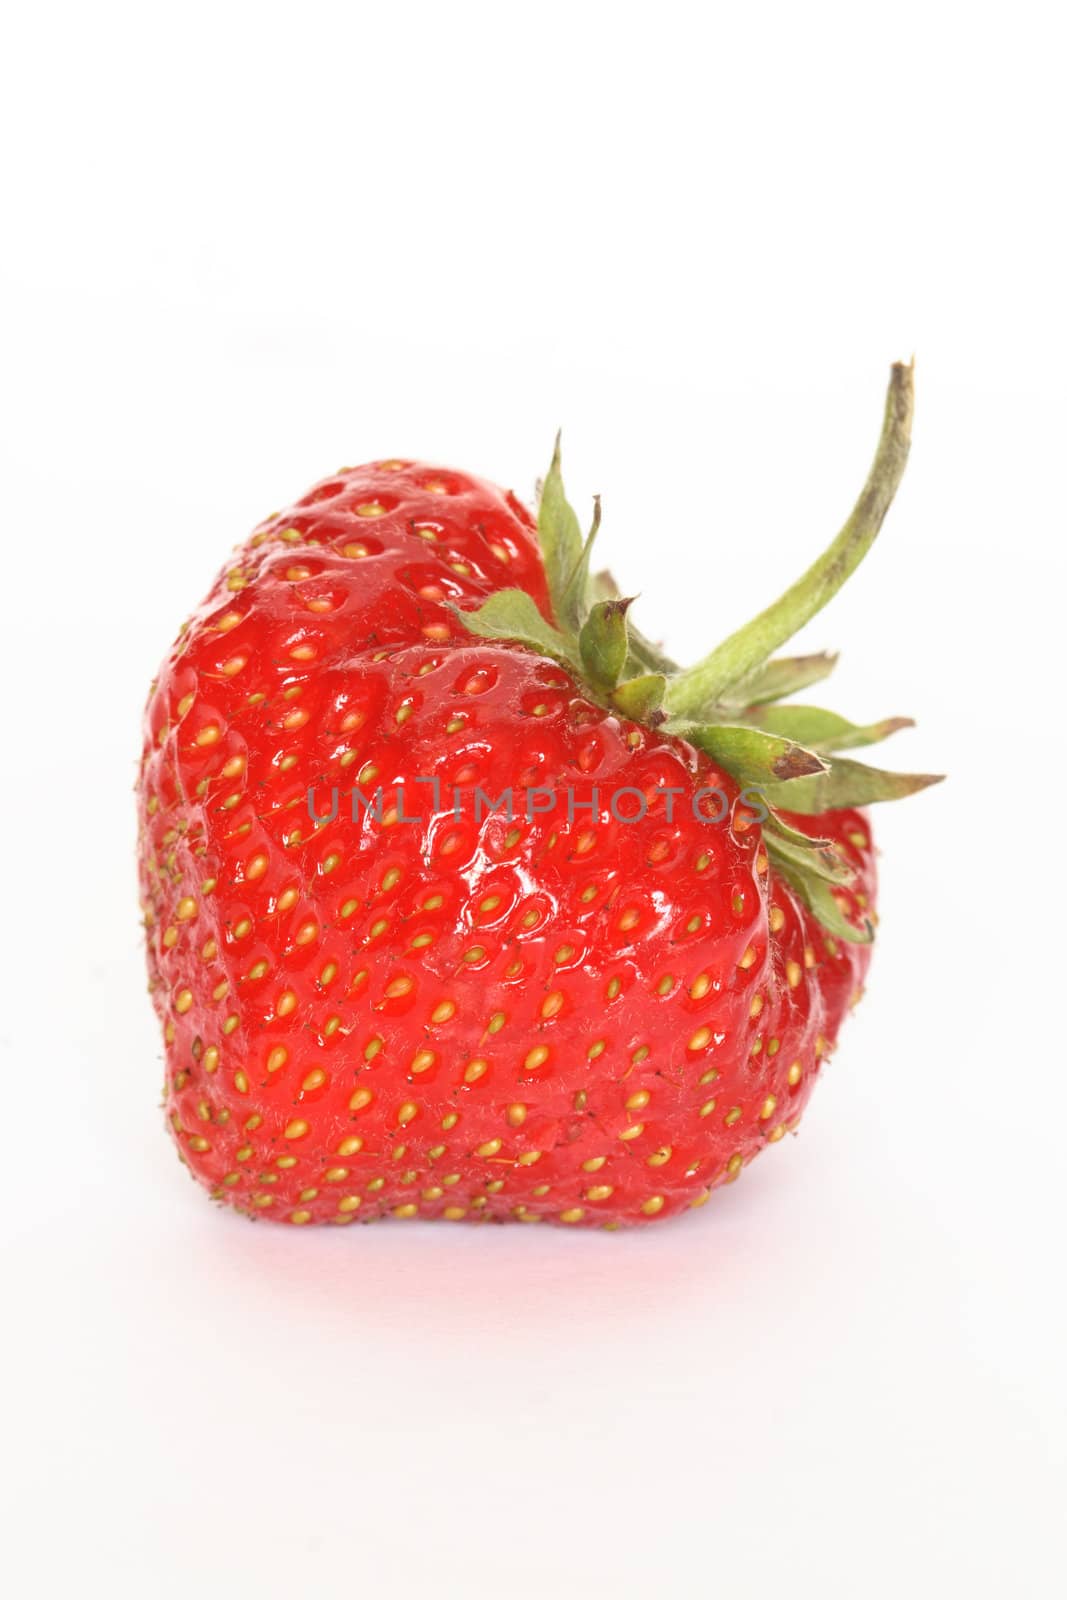 Strawberry by kvkirillov